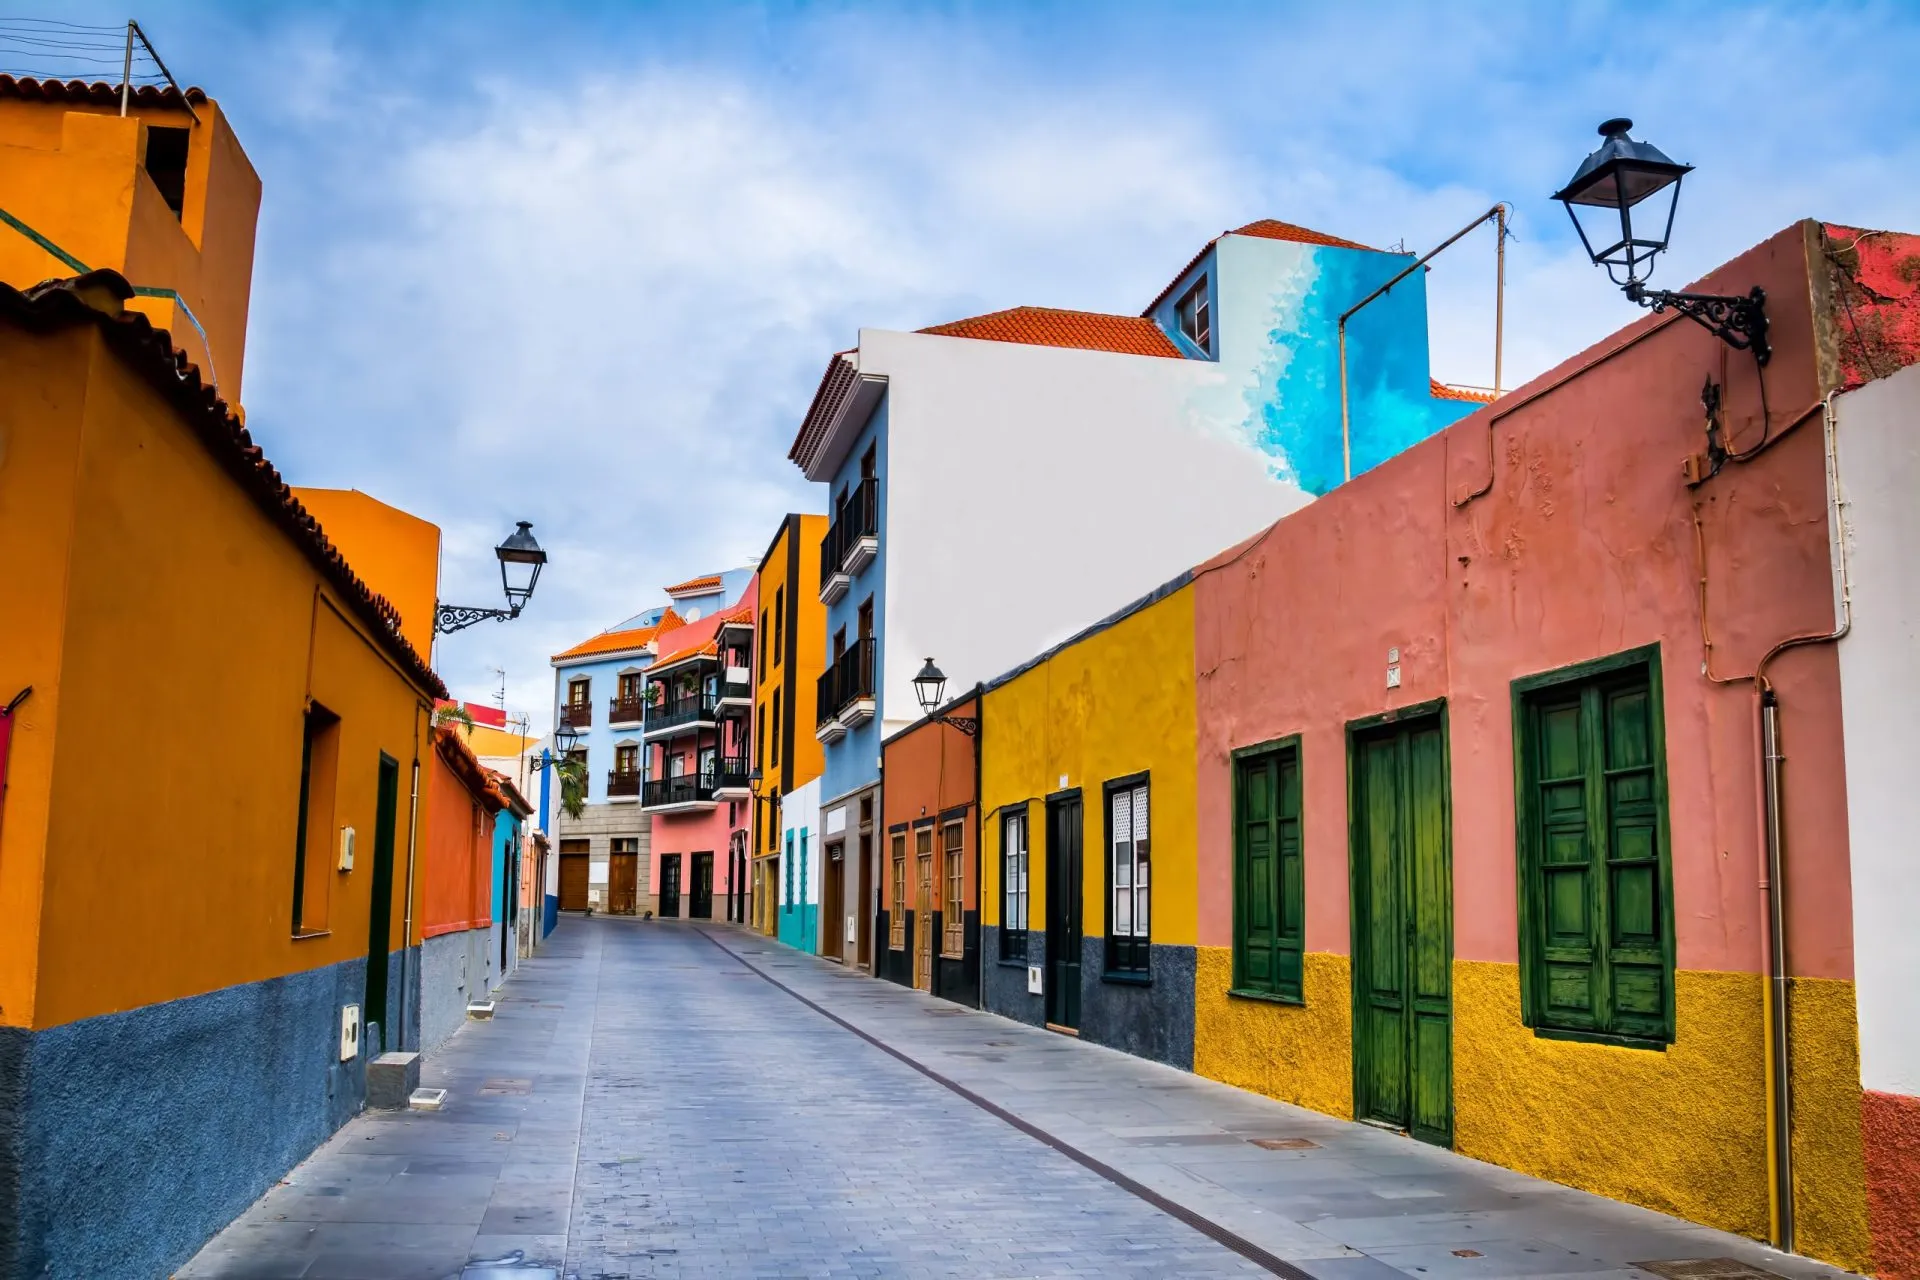 Färgglada hus på gatan i staden Puerto de la Cruz, Teneriffa, Kanarieöarna, Spanien. Detta är en gågata för turister nära havet där det finns många restauranger och butiker